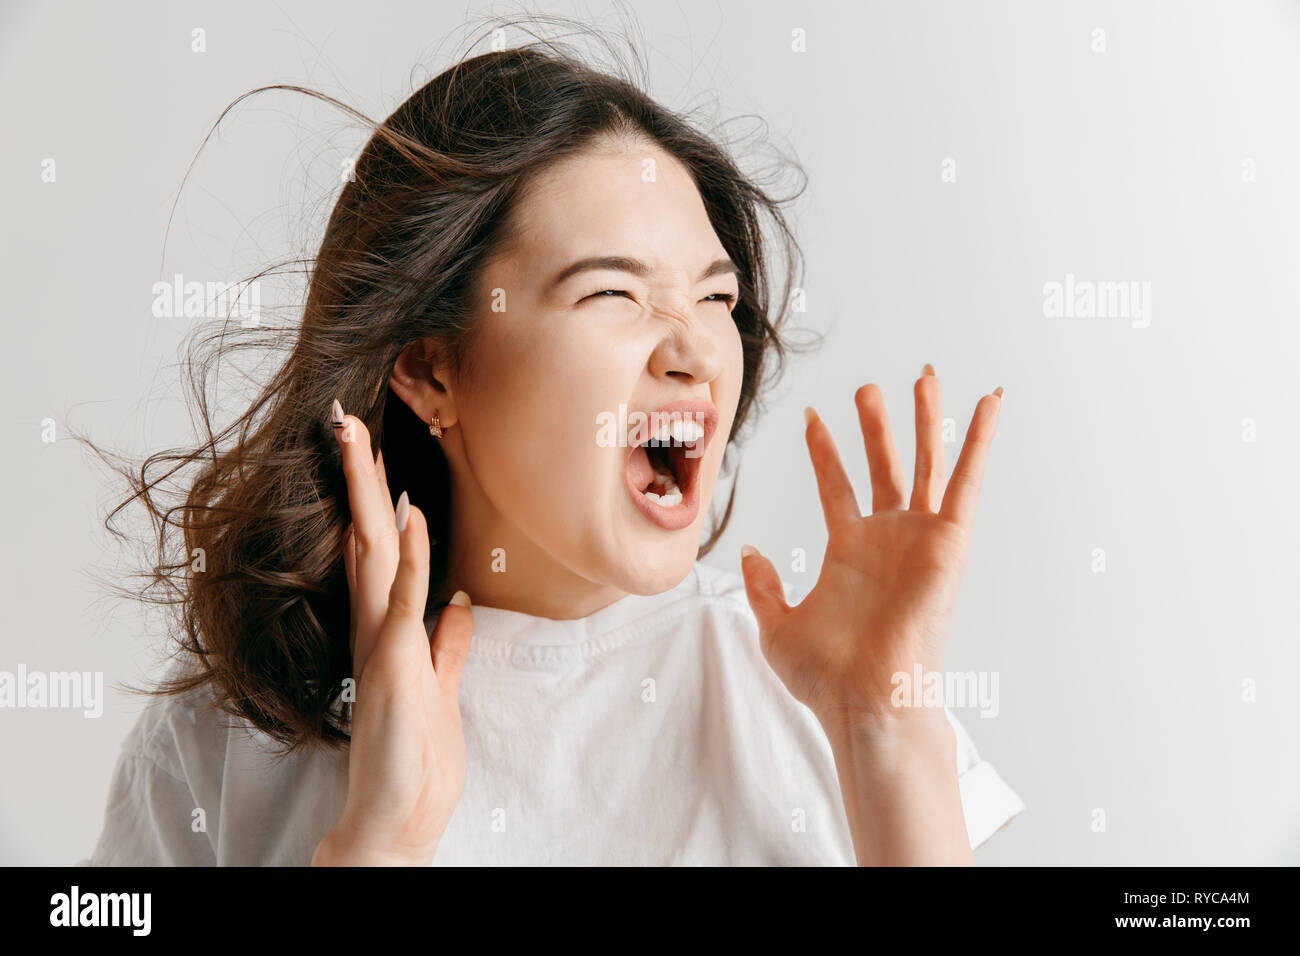 Schreien, Hass, Wut. Weinend emotionale wütend asiatische Frau schreiend auf Grau studio Hintergrund. Emotionale, junges Gesicht. Weibliches Brustbild. Menschliche Gefühle, Mimik Konzept. Stockfoto